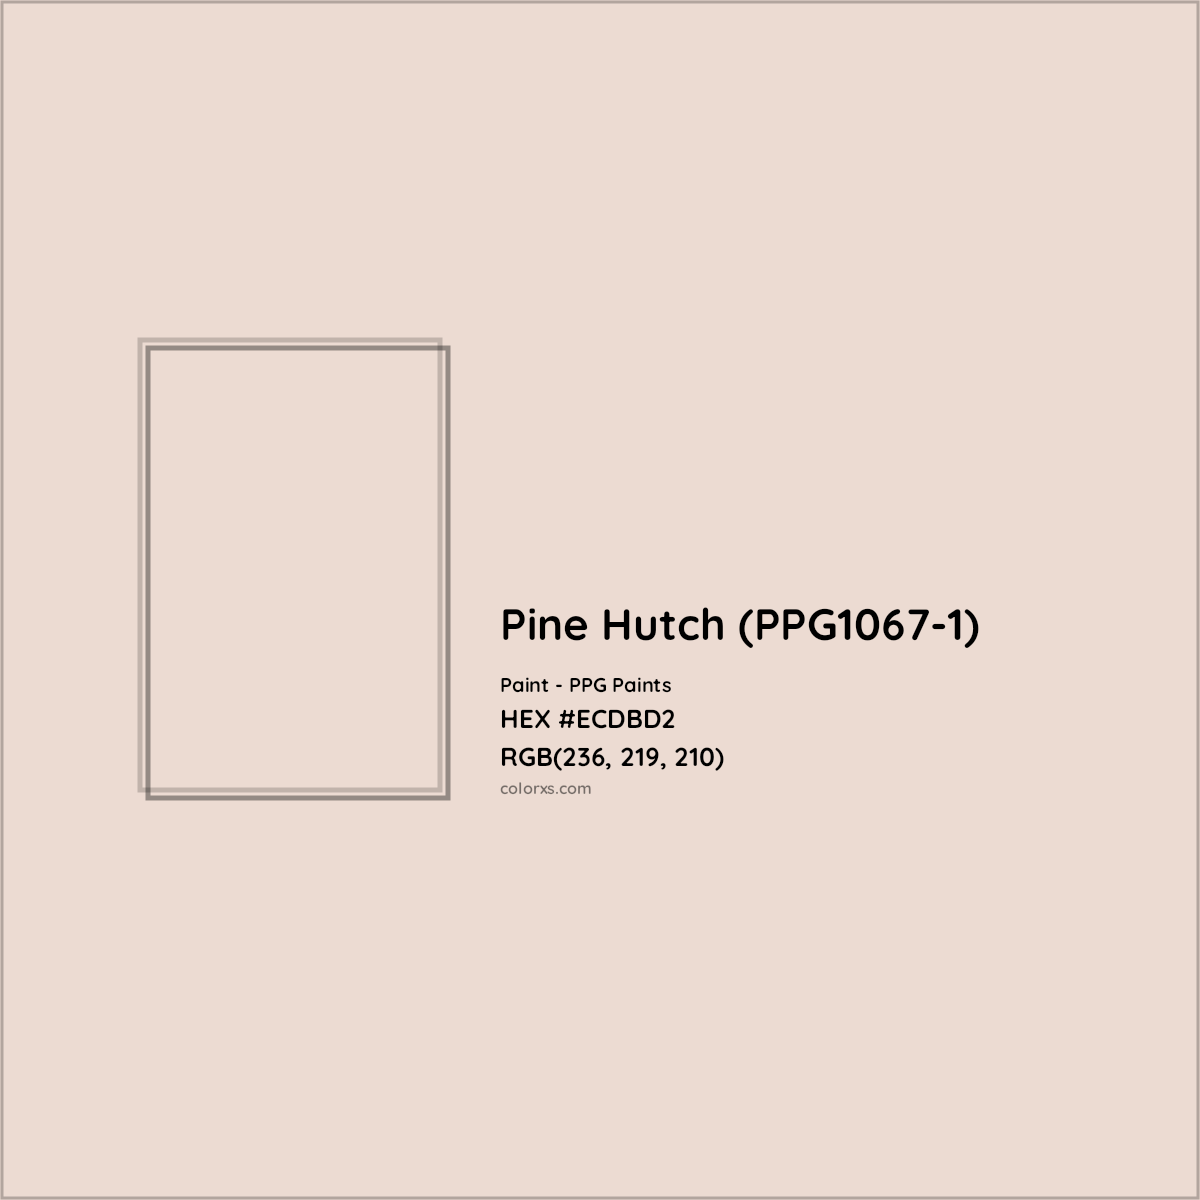 HEX #ECDBD2 Pine Hutch (PPG1067-1) Paint PPG Paints - Color Code